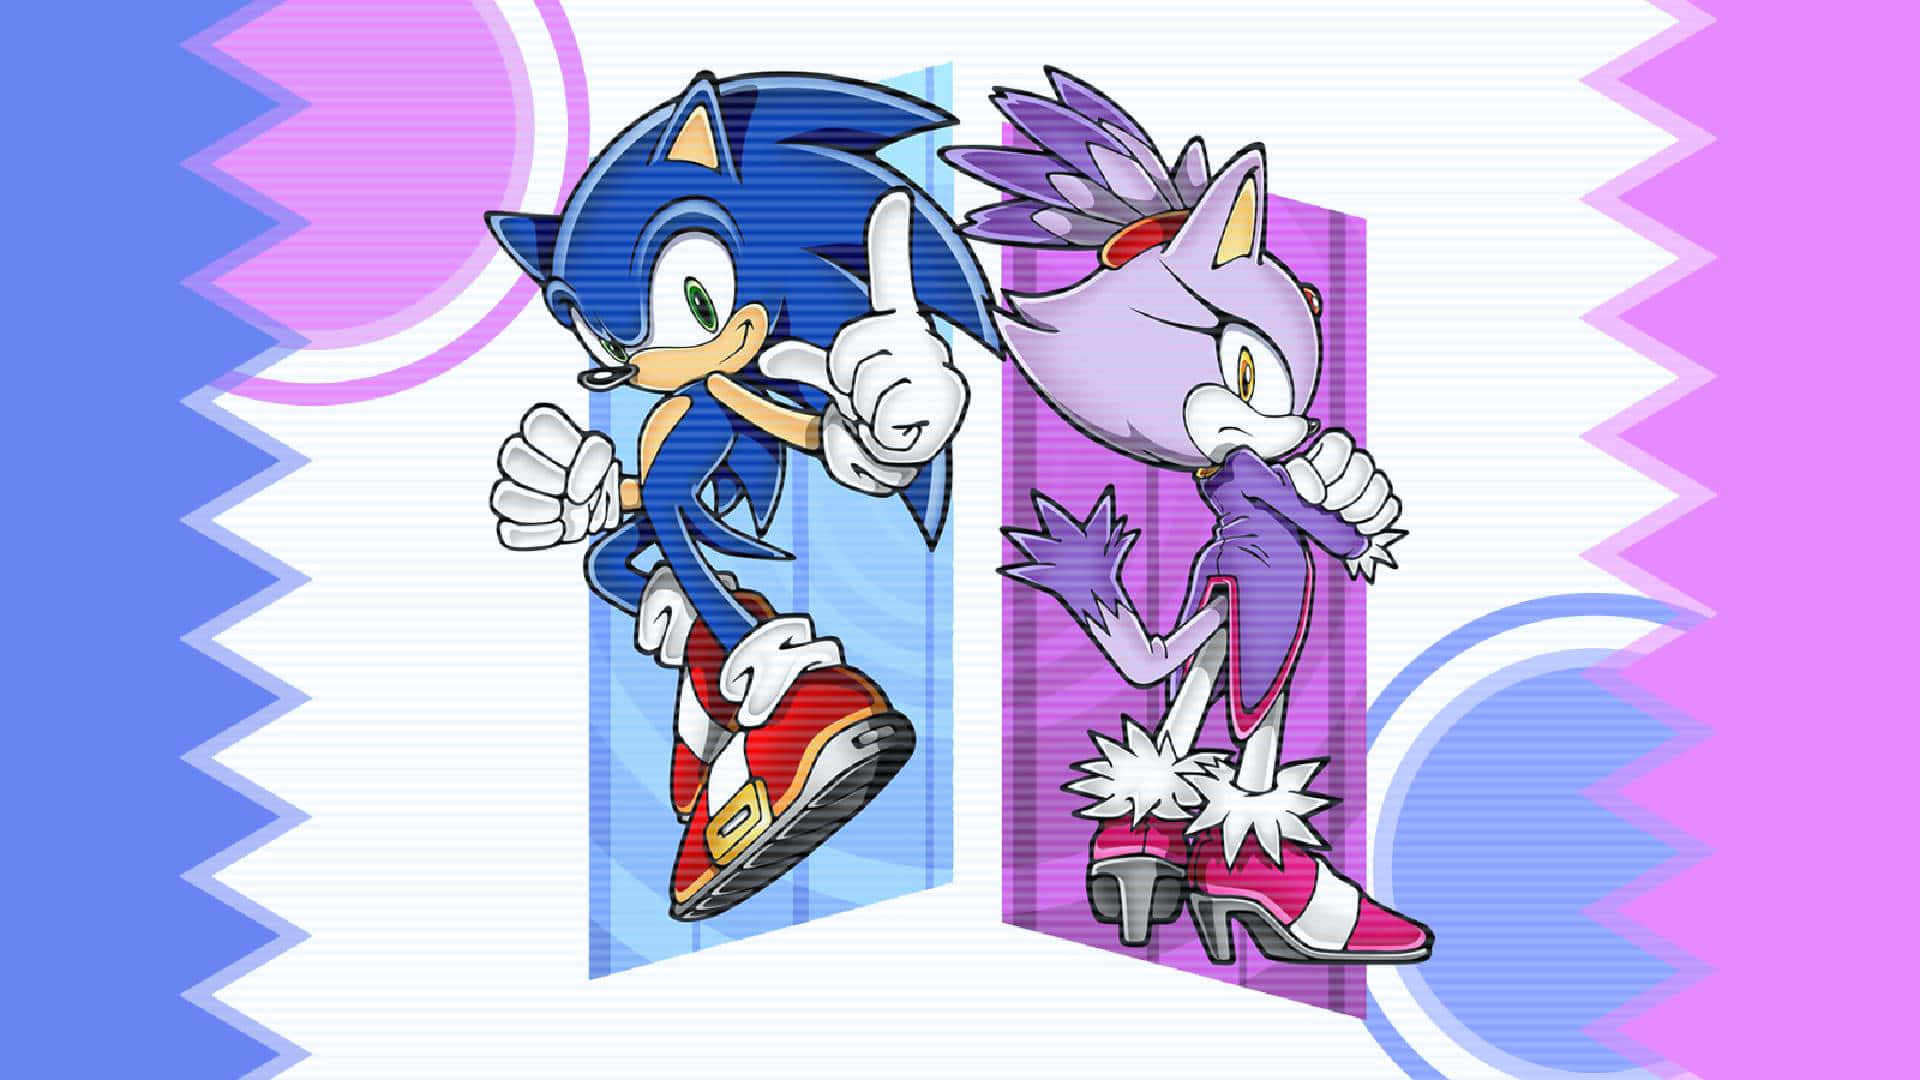 Impressive Sonic Fan Art Illustration in Full HD Wallpaper